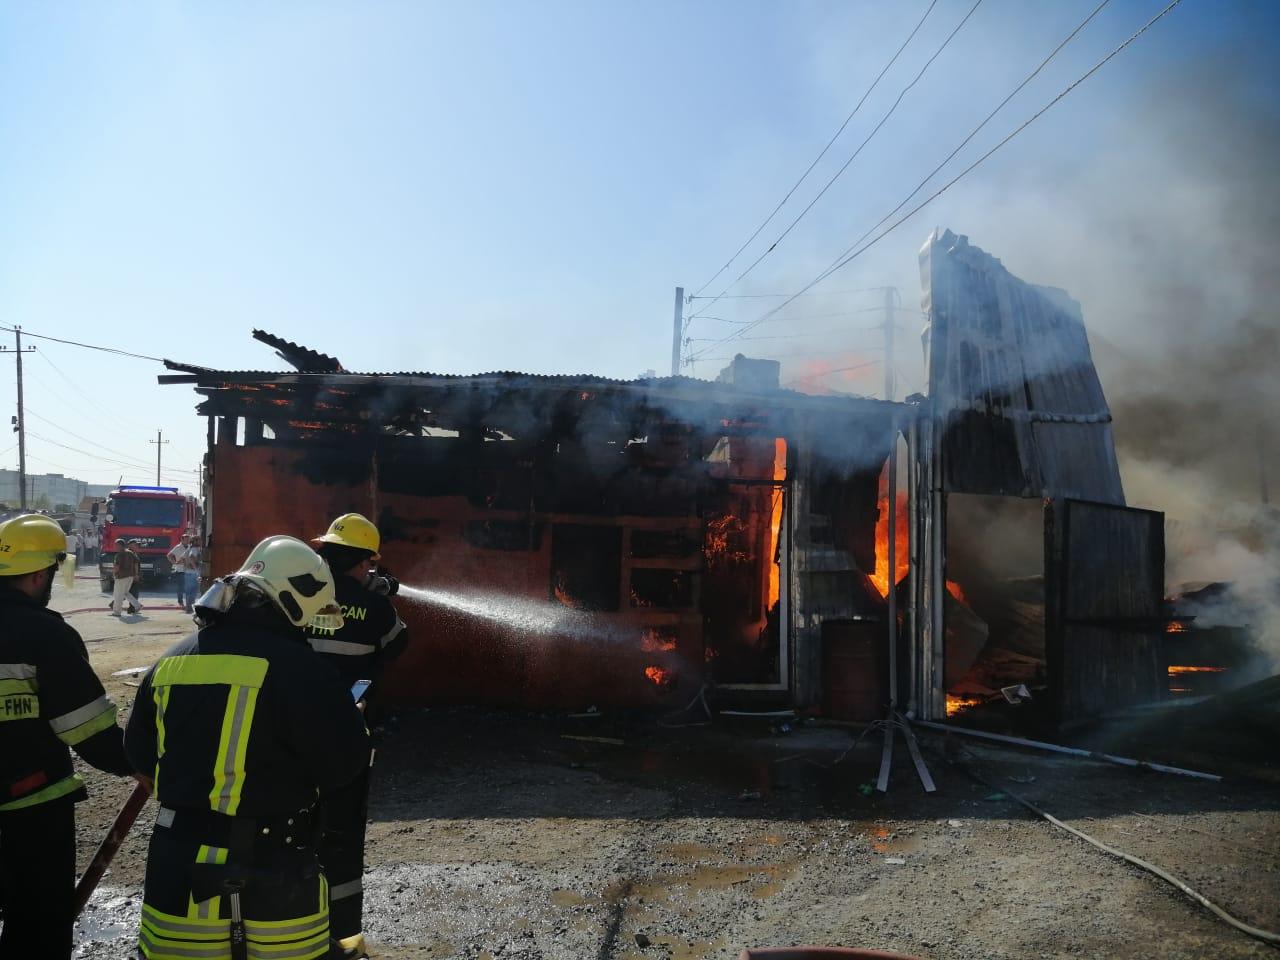 К тушению пожара привлечено 22 единицы техники - МЧС (ФОТО/ВИДЕО)